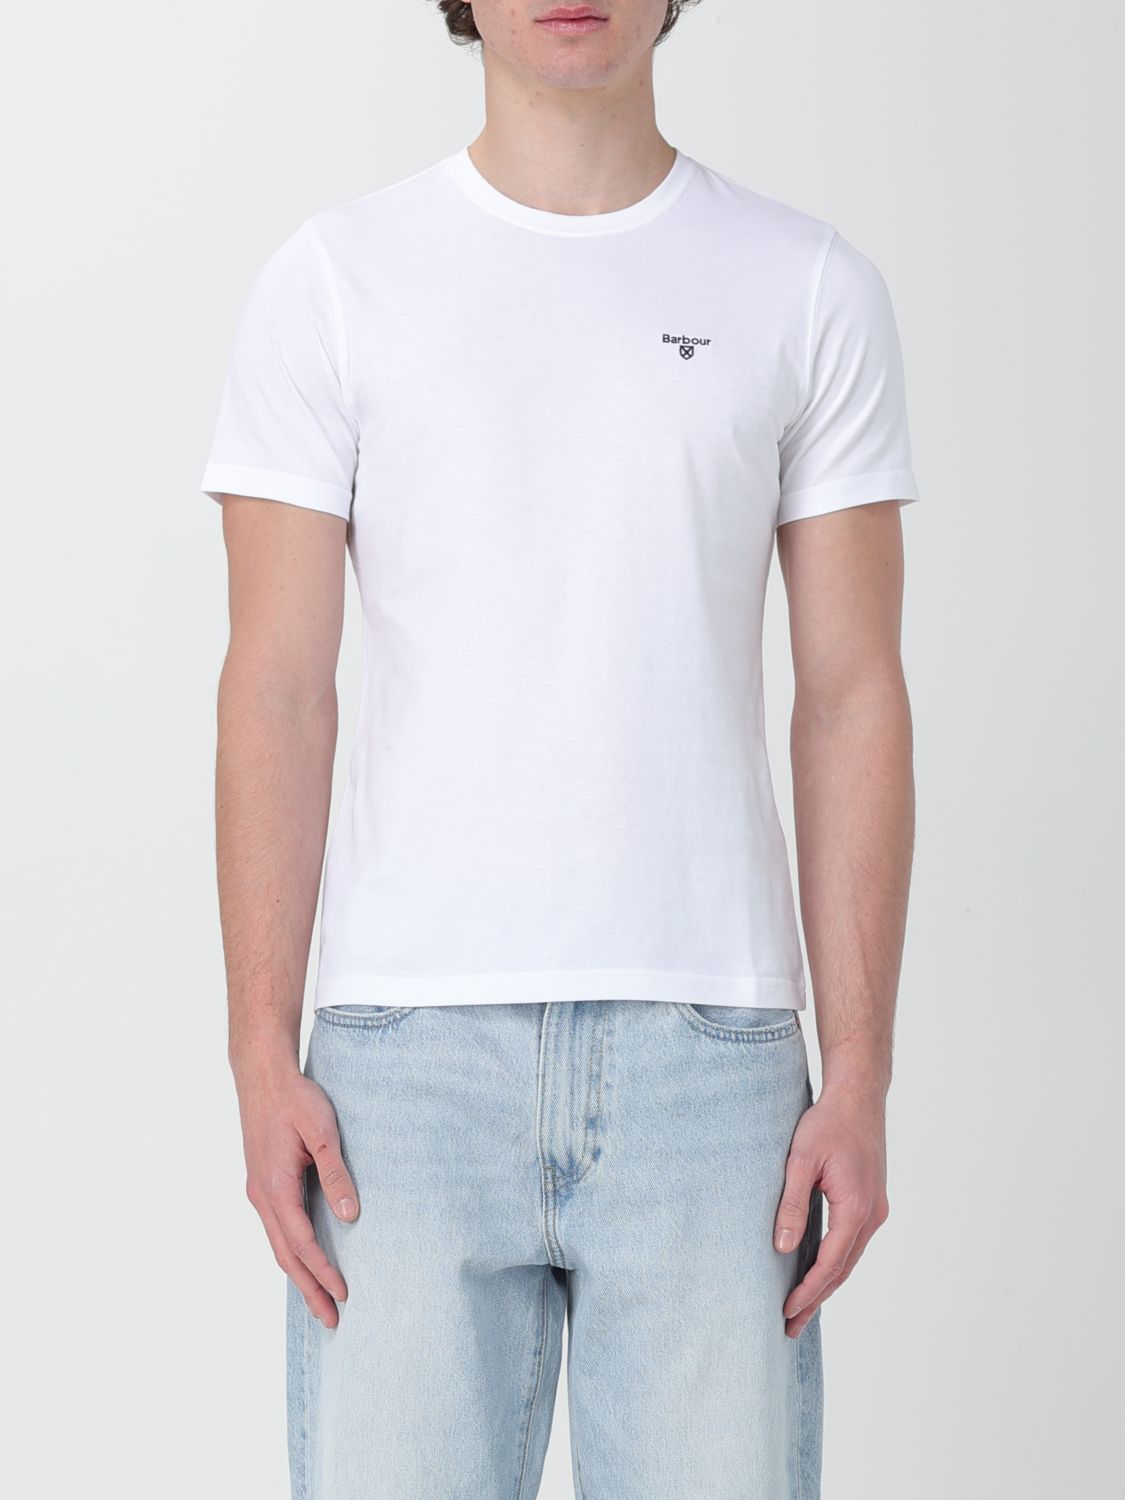 Barbour T-shirt  Men Colour White